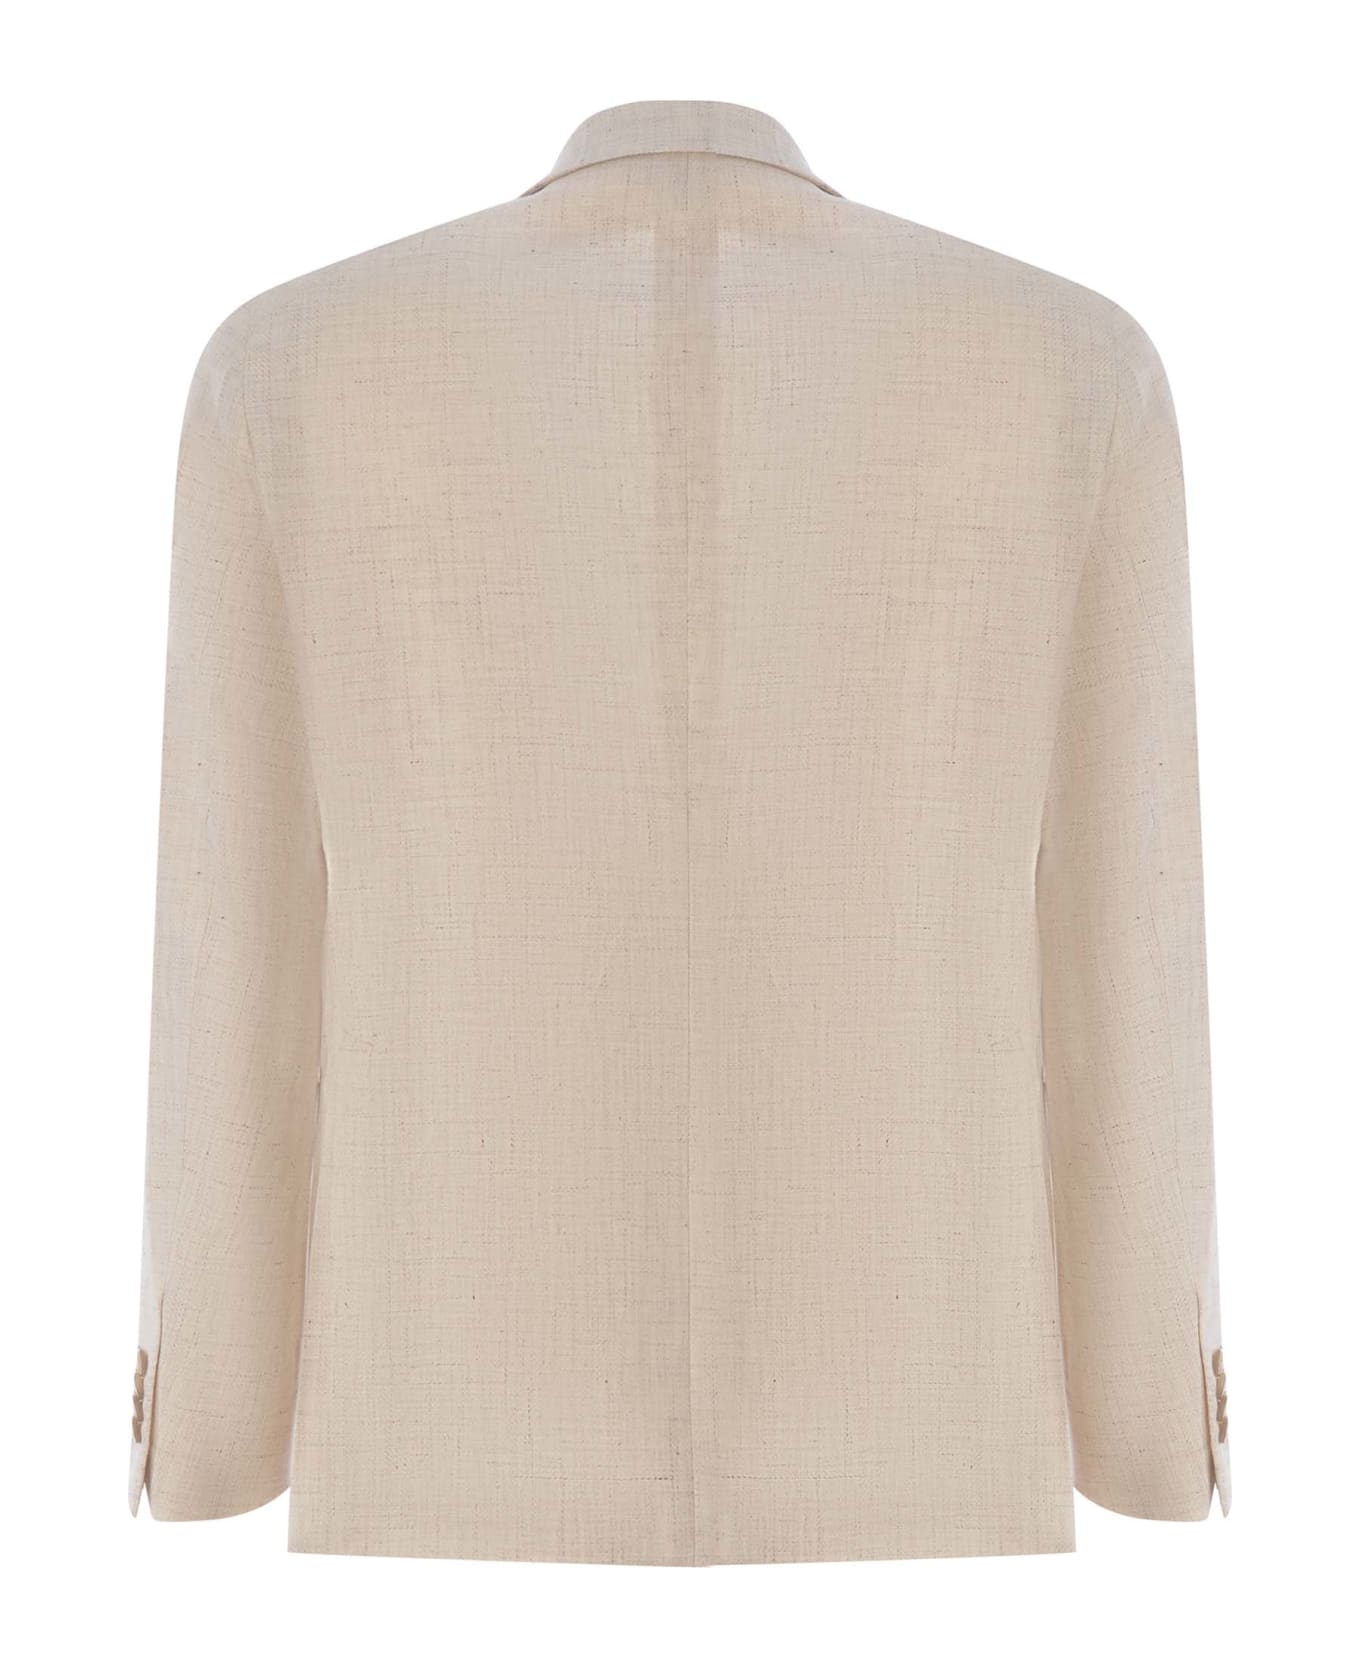 Tagliatore Single-breasted Jacket Tagliatore In Linen And Cotton - Beige chiaro